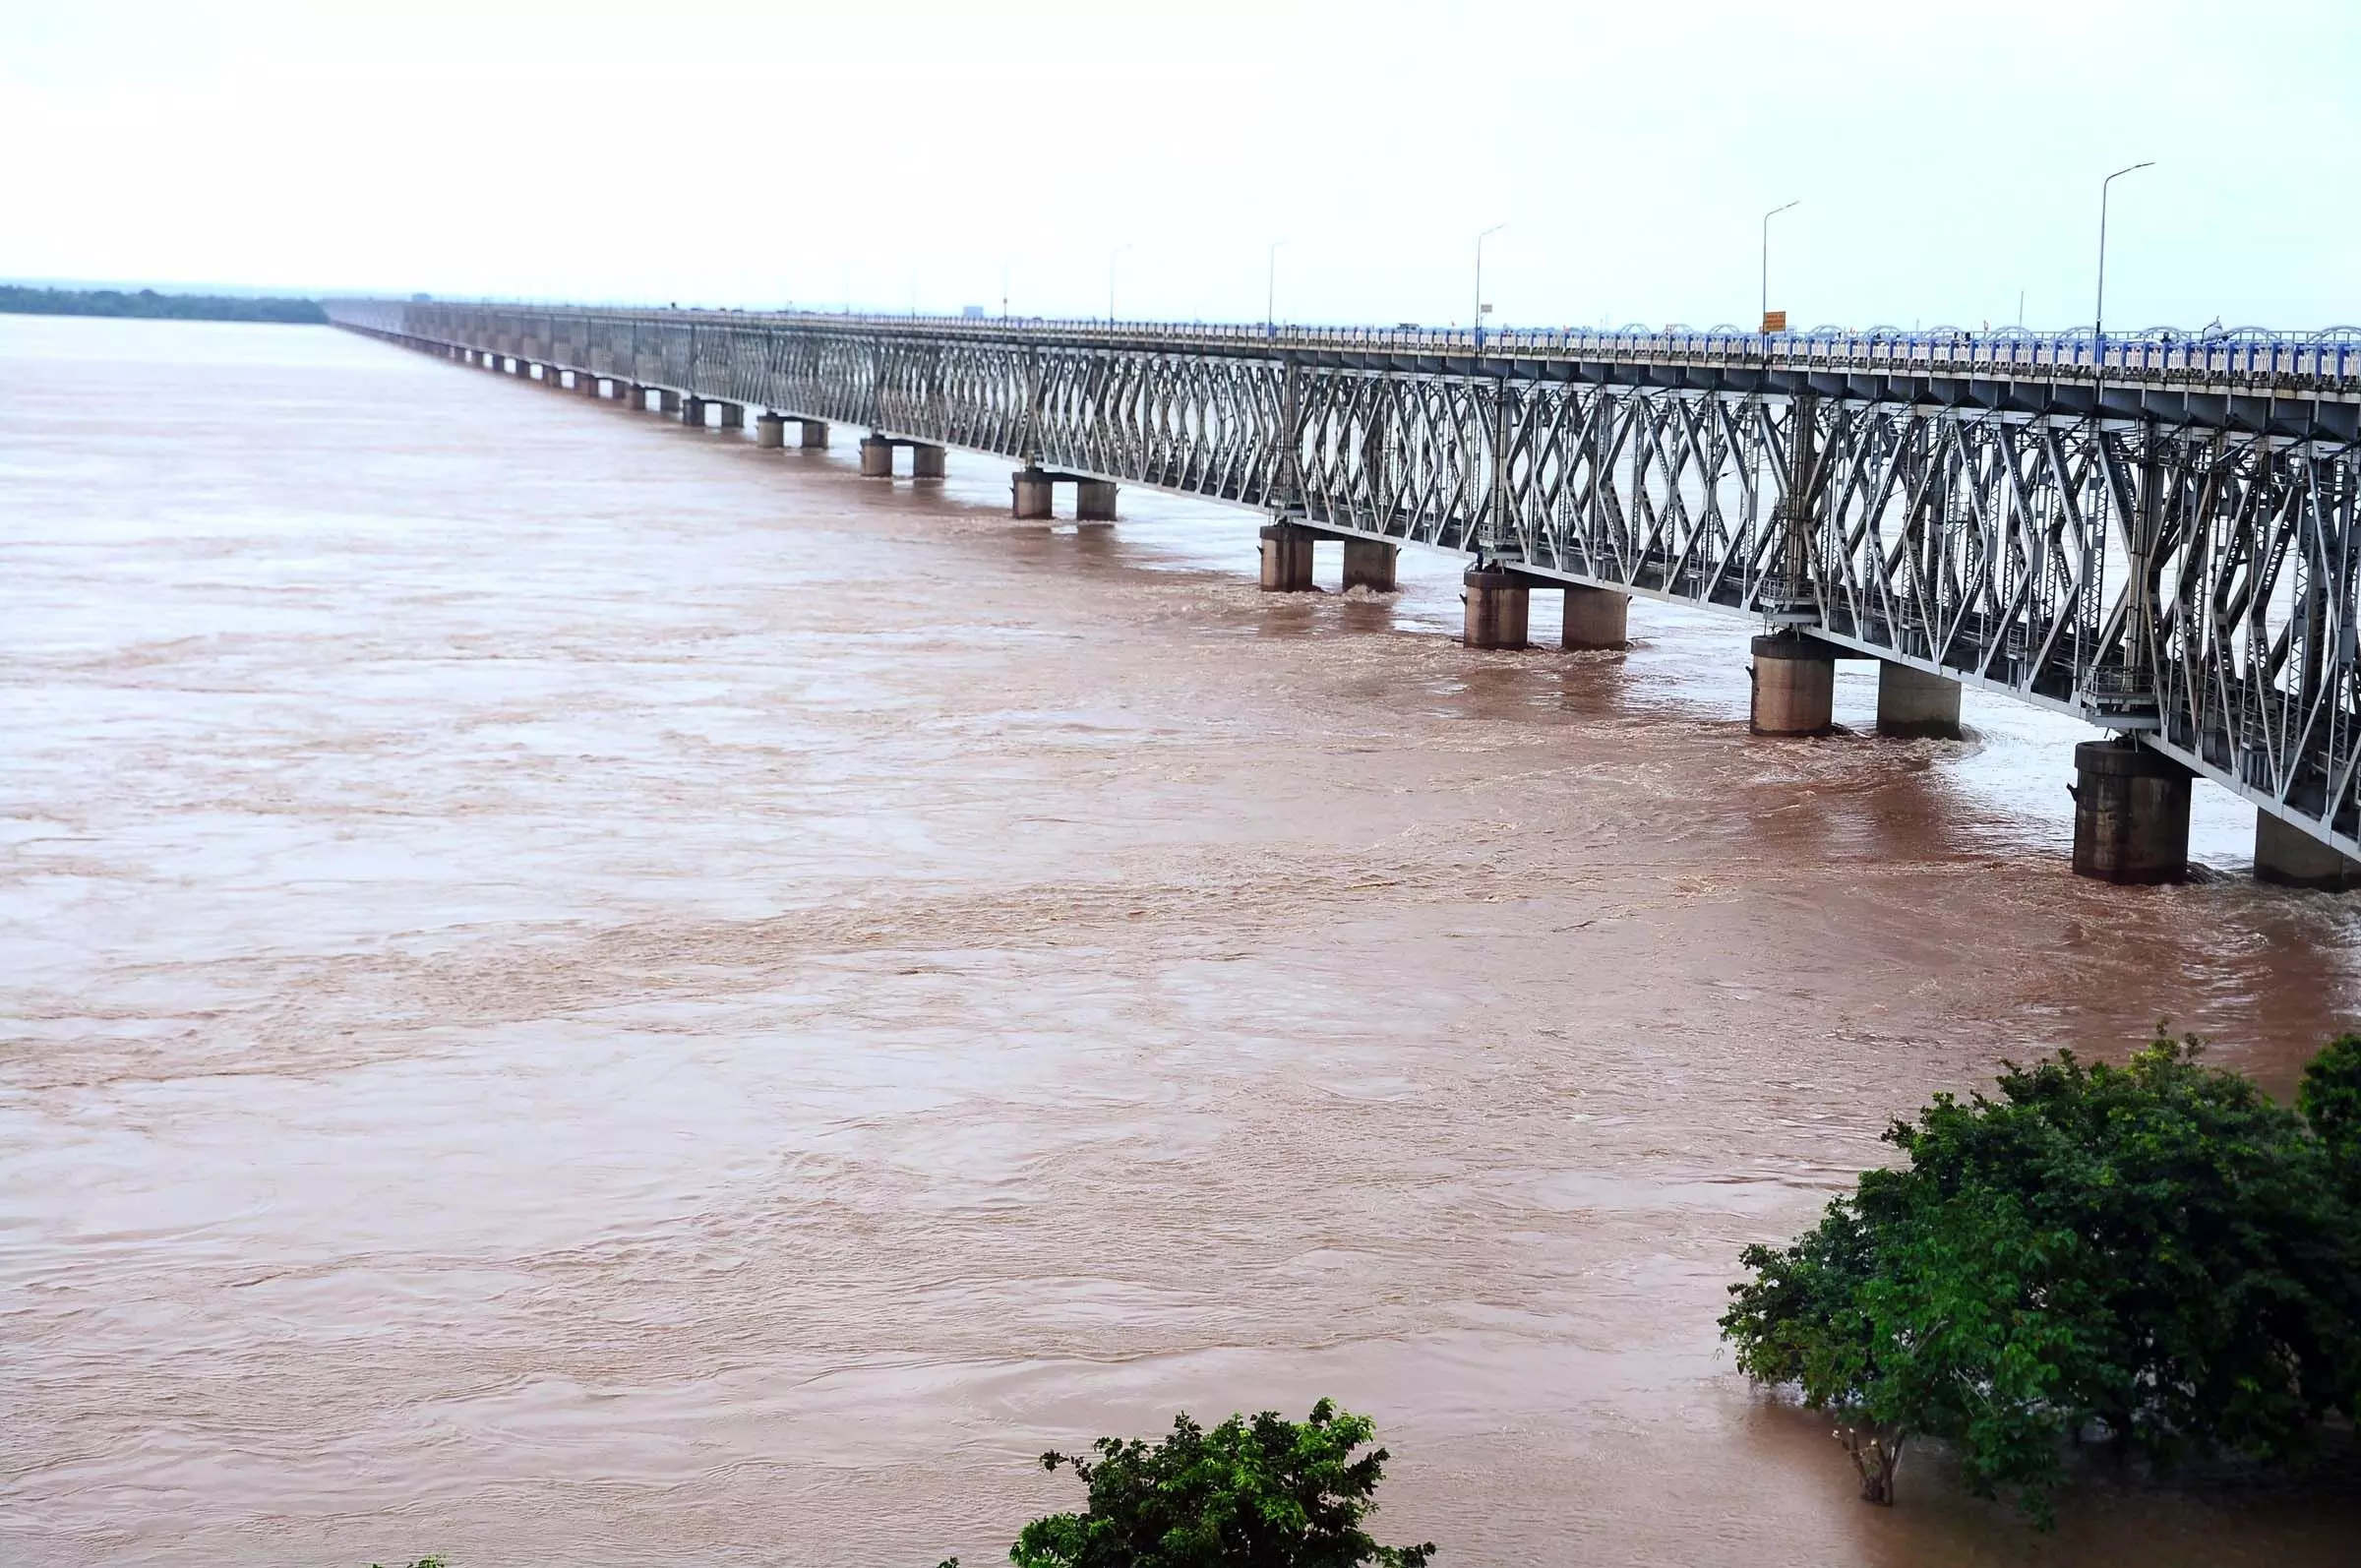 Nagarjuna सागर परियोजना में जल प्रवाह बढ़कर 52,261 क्यूसेक हो गया